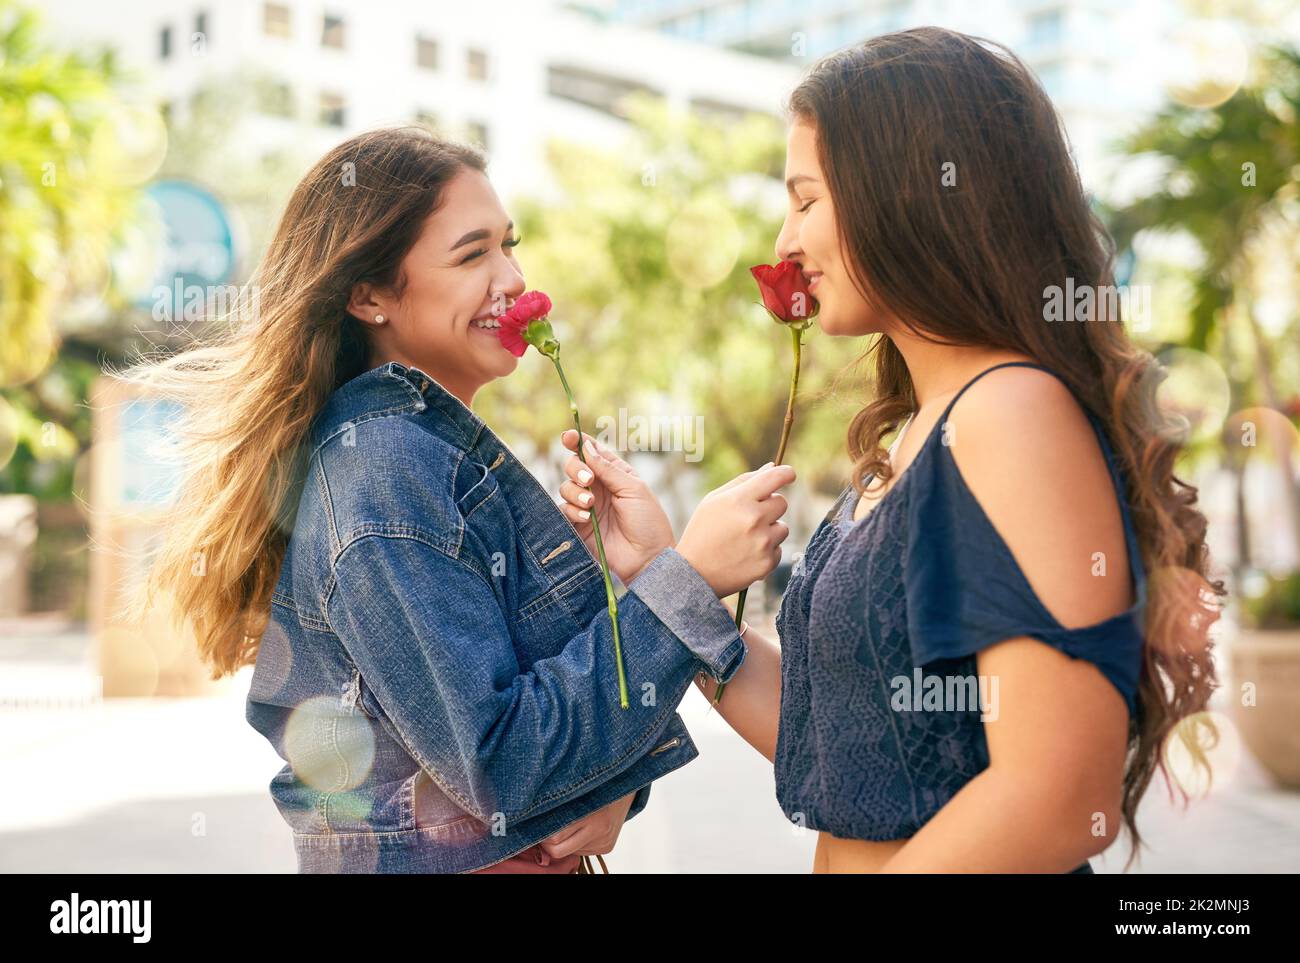 Vous, ma personne préférée dans le monde entier. Photo de deux meilleures amies de sexe féminin qui sentaient des roses dans la ville. Banque D'Images